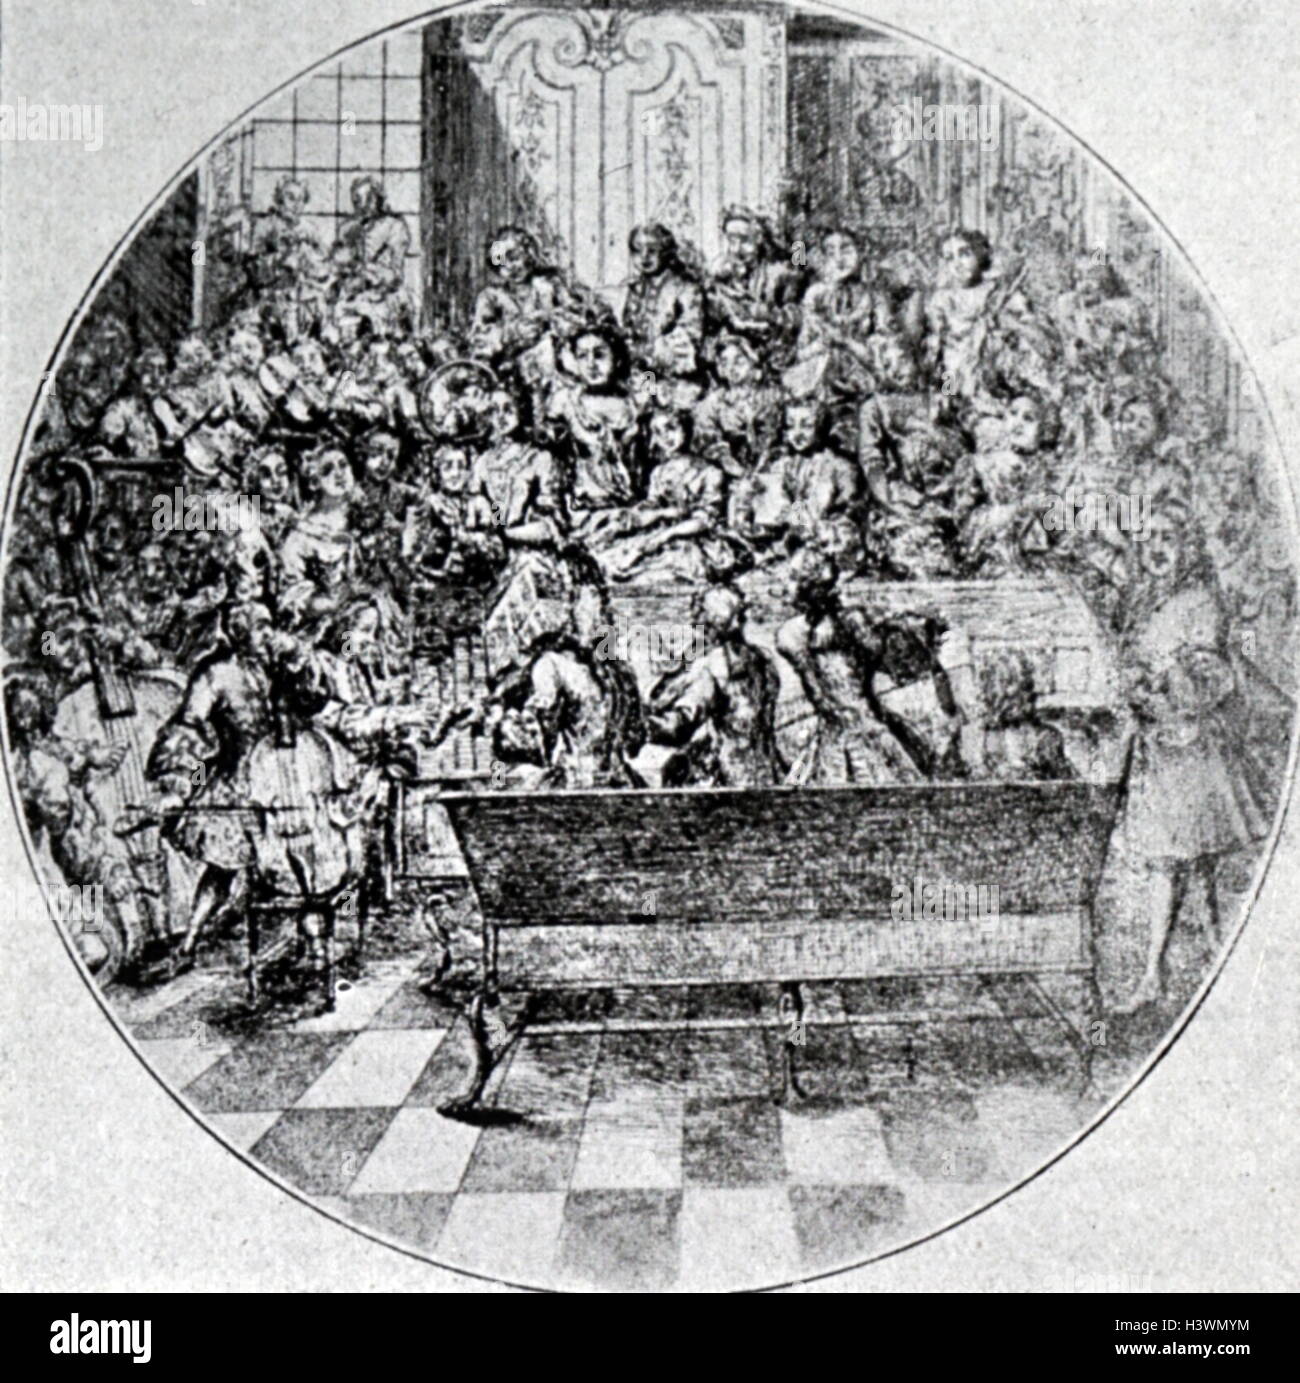 Grabado representando a George Frideric Handel (1685-1759), un compositor barroco alemán, dirigiendo un oratorio. Fecha del siglo XVIII Foto de stock